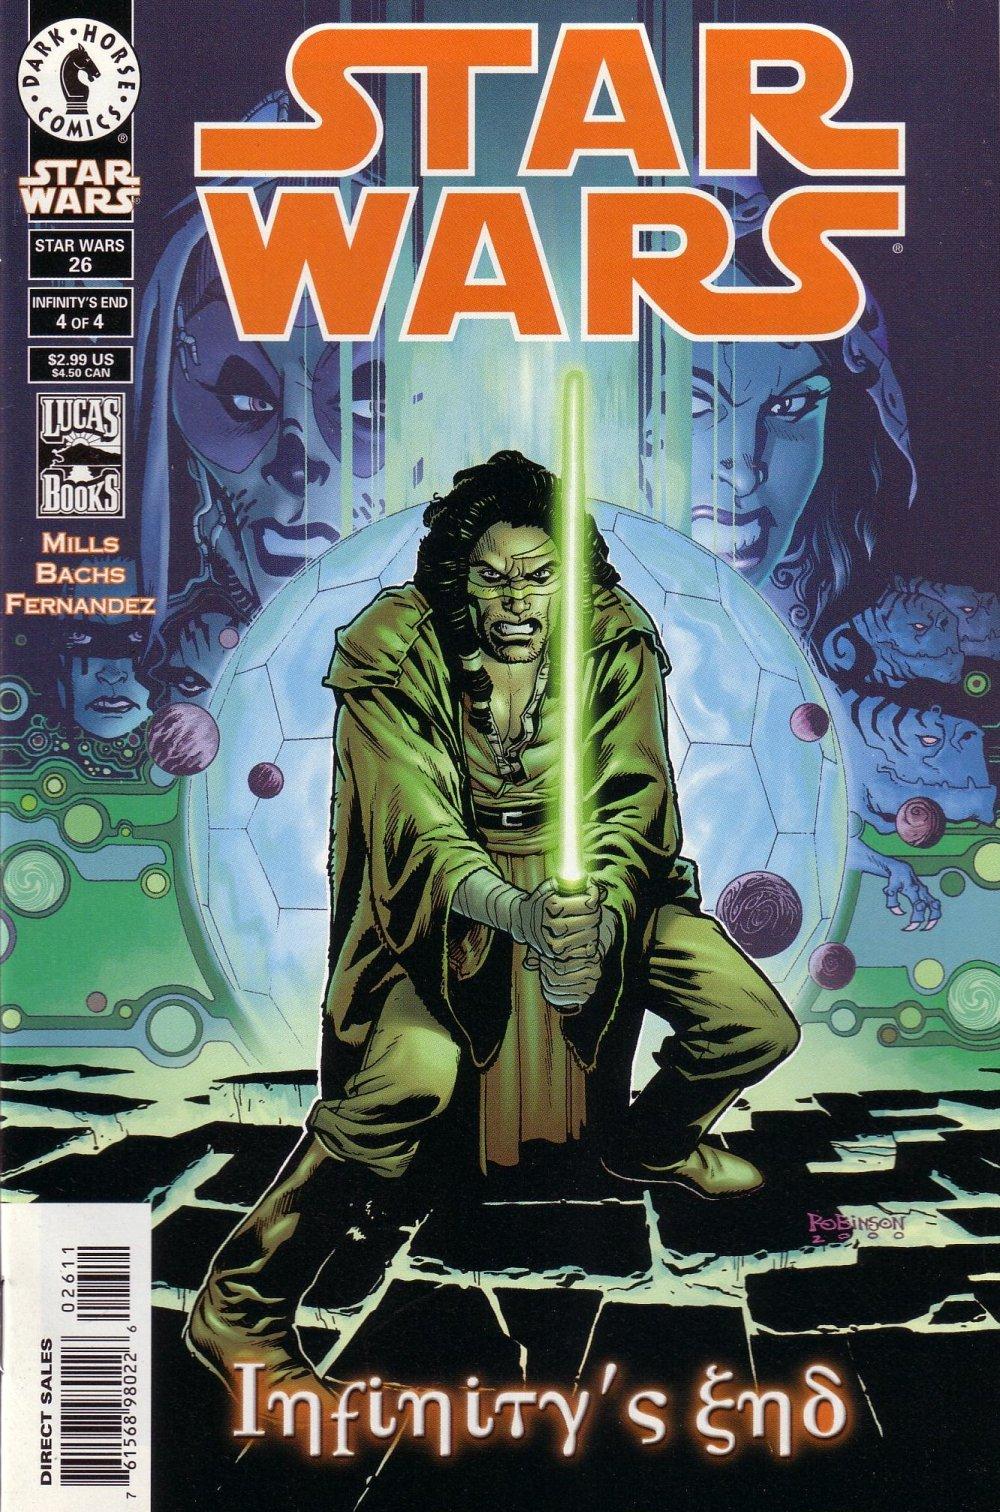 Star Wars: Republic Vol. 1 #26